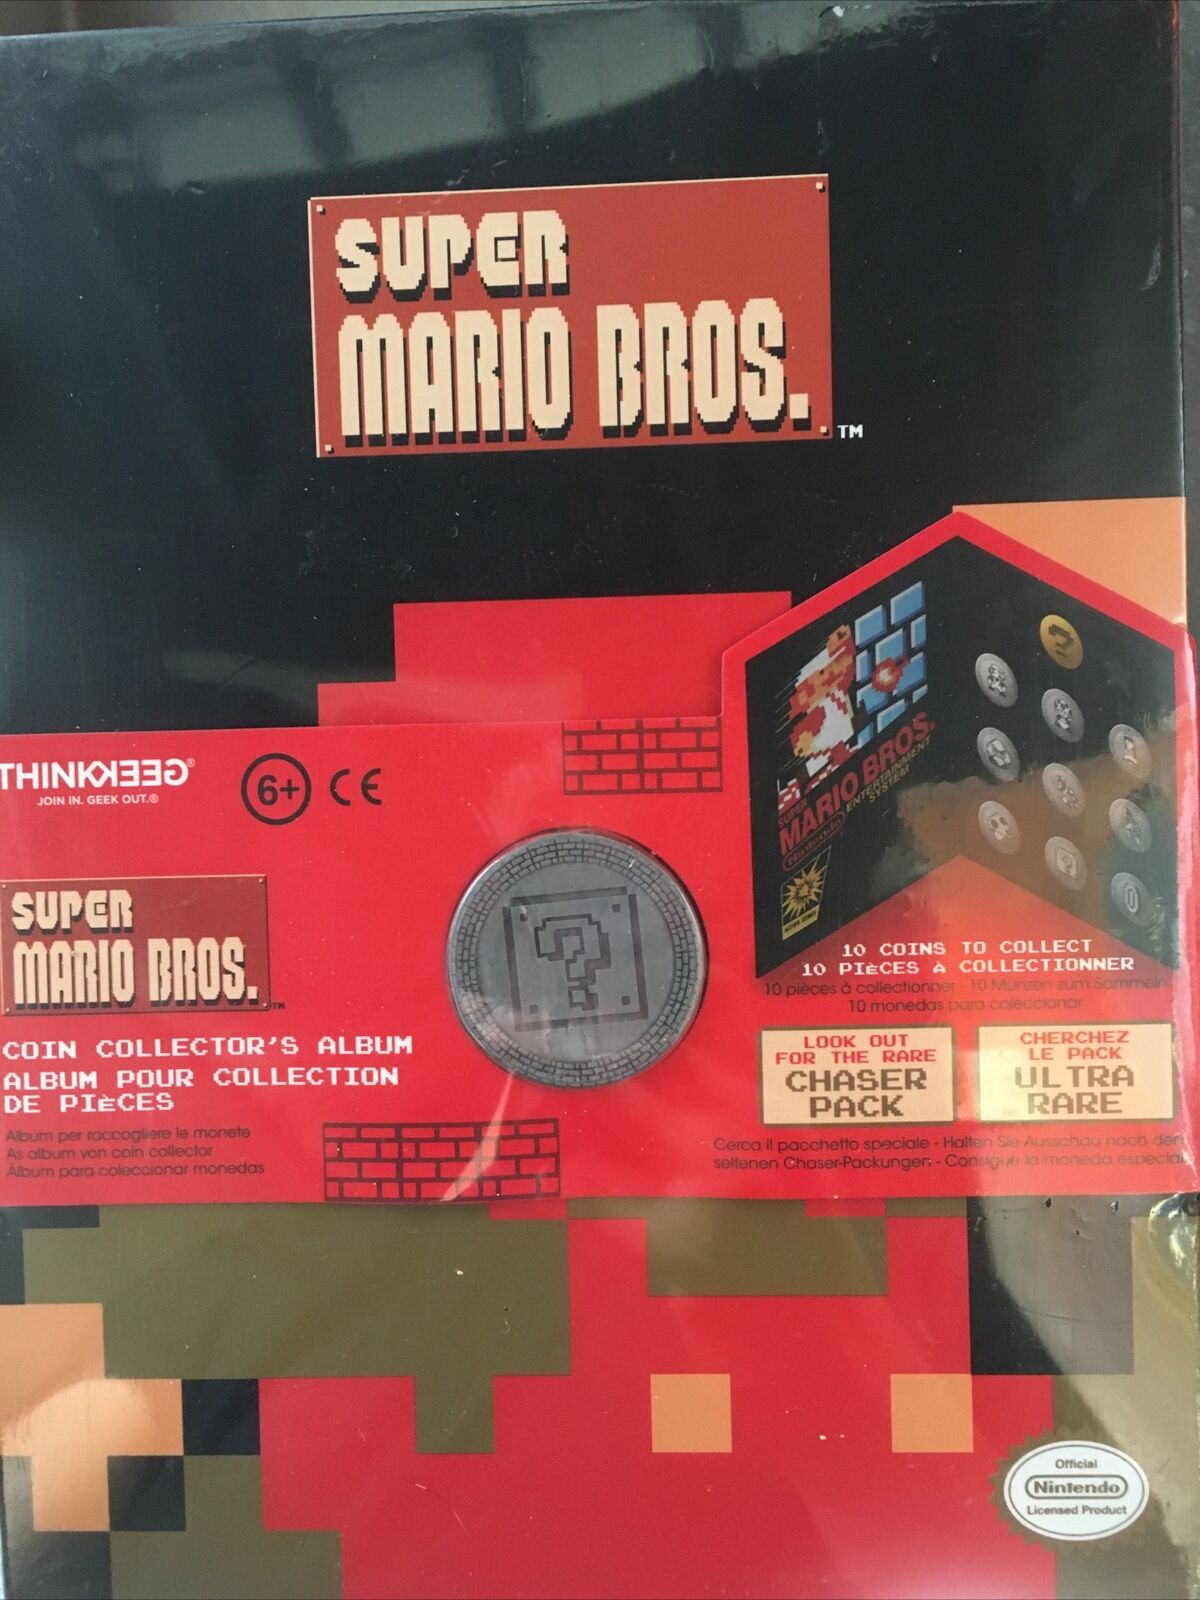 Super Mario Bros Coin Collector's Album